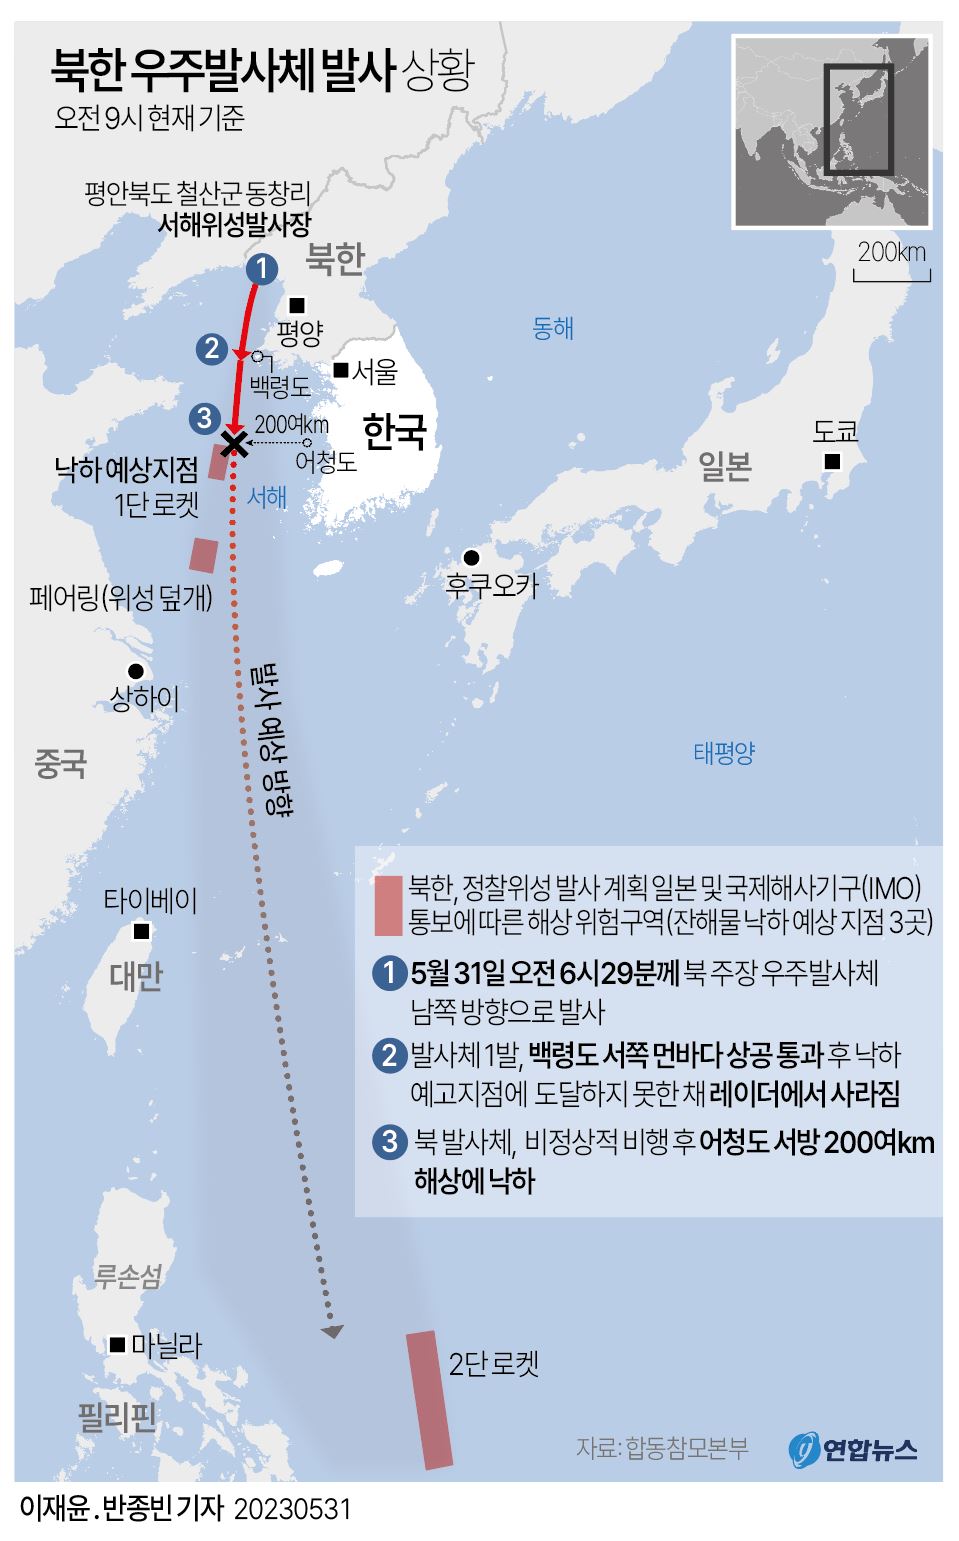 [그래픽] 북한 우주발사체 발사 상황